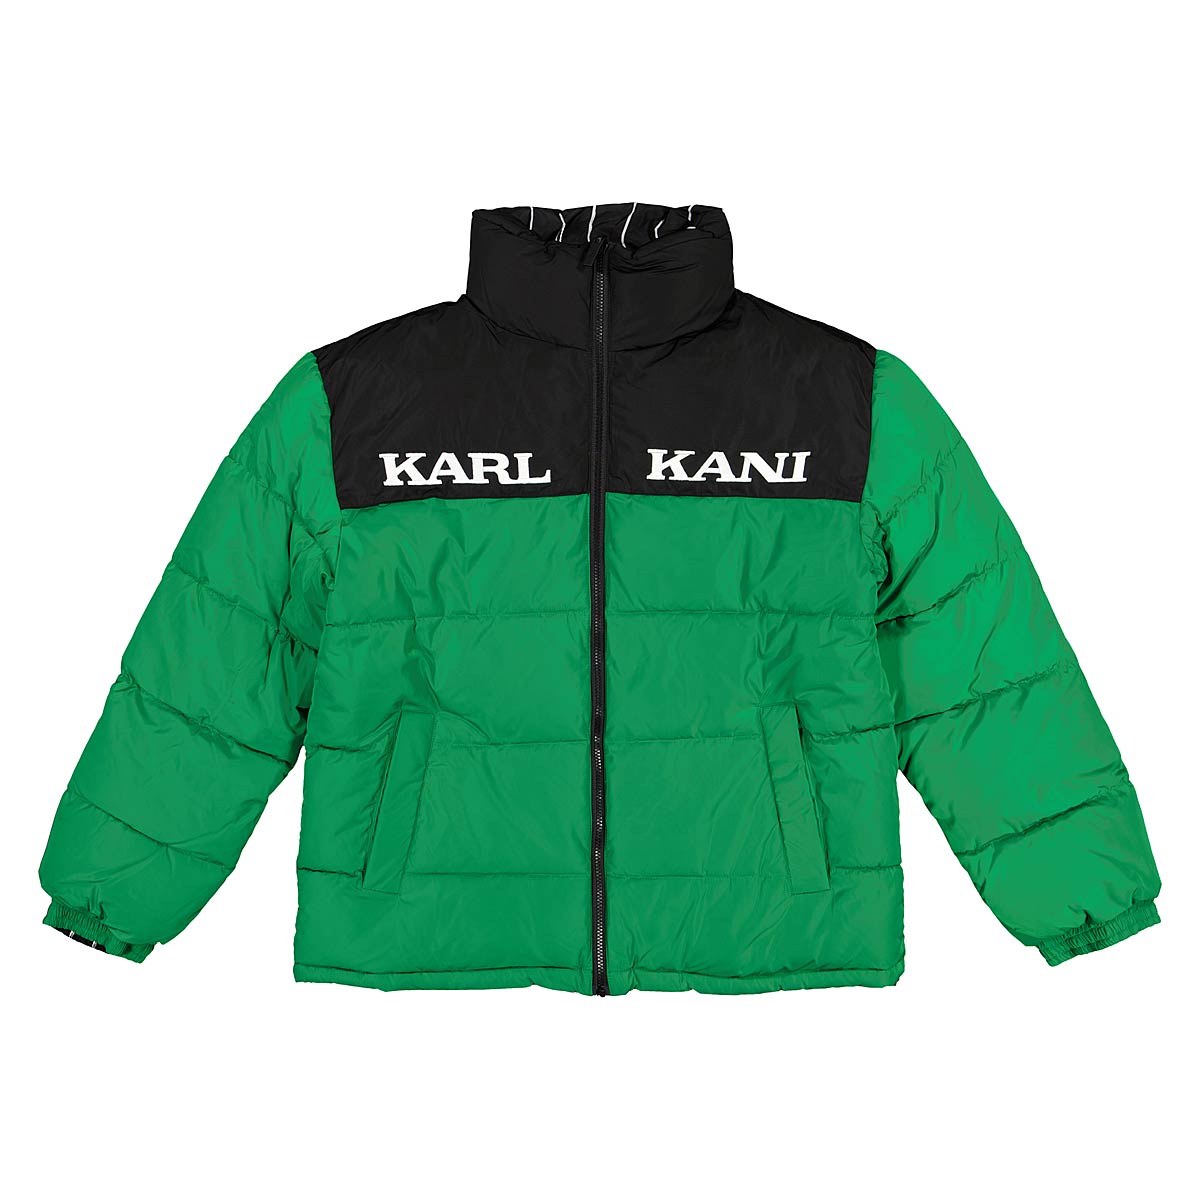 Karl Kani Retro Block Reversible Puffer Jacket, Green/Black/White